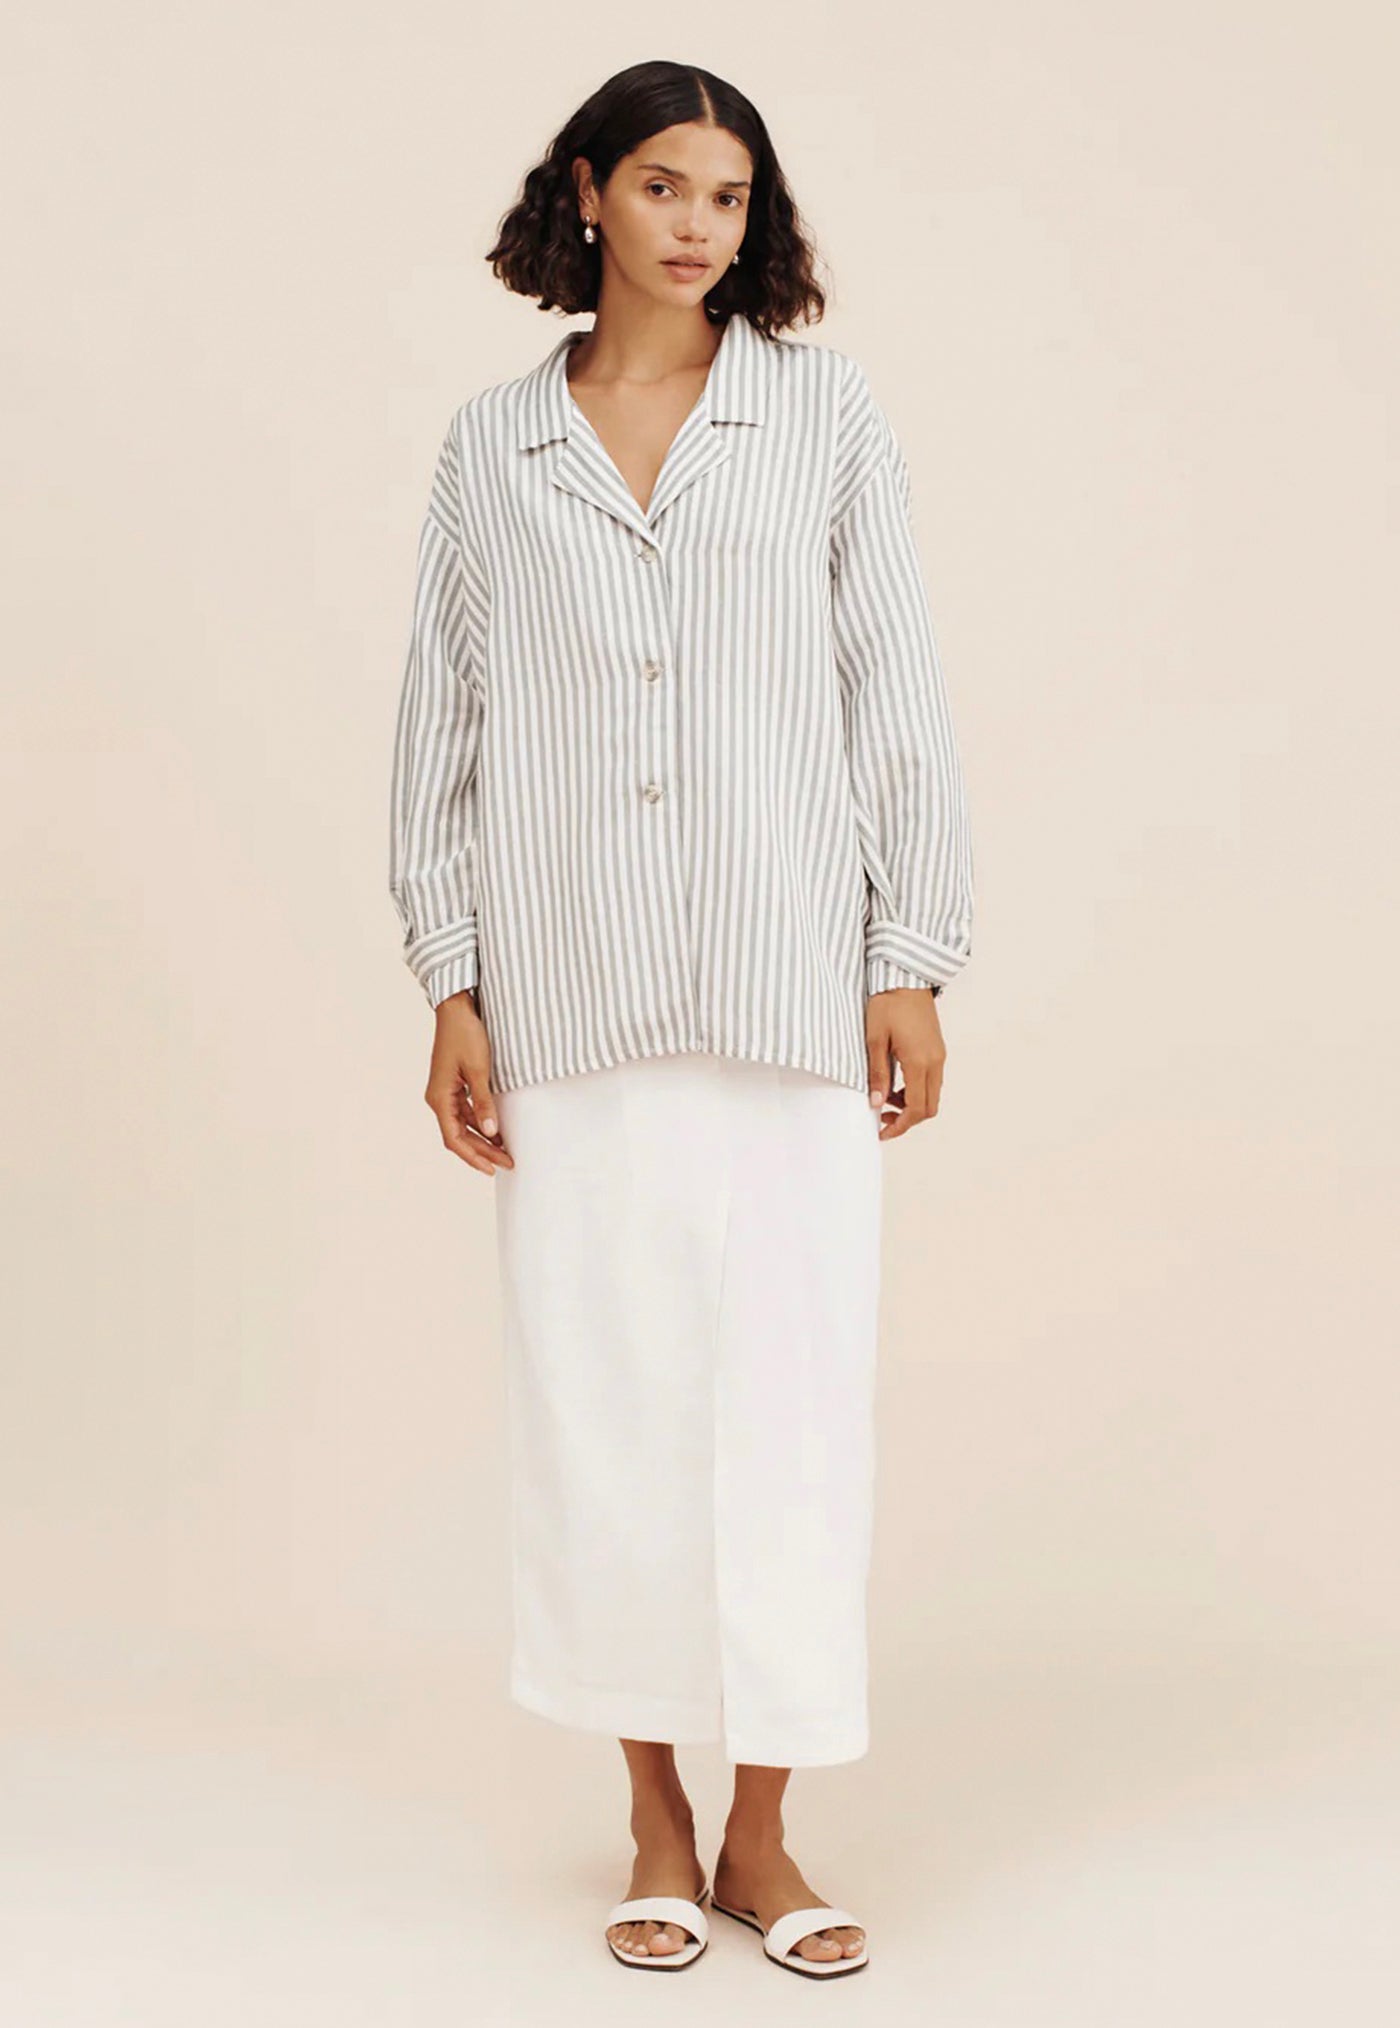 Zadie Shirt - Seagrass Stripe sold by Angel Divine